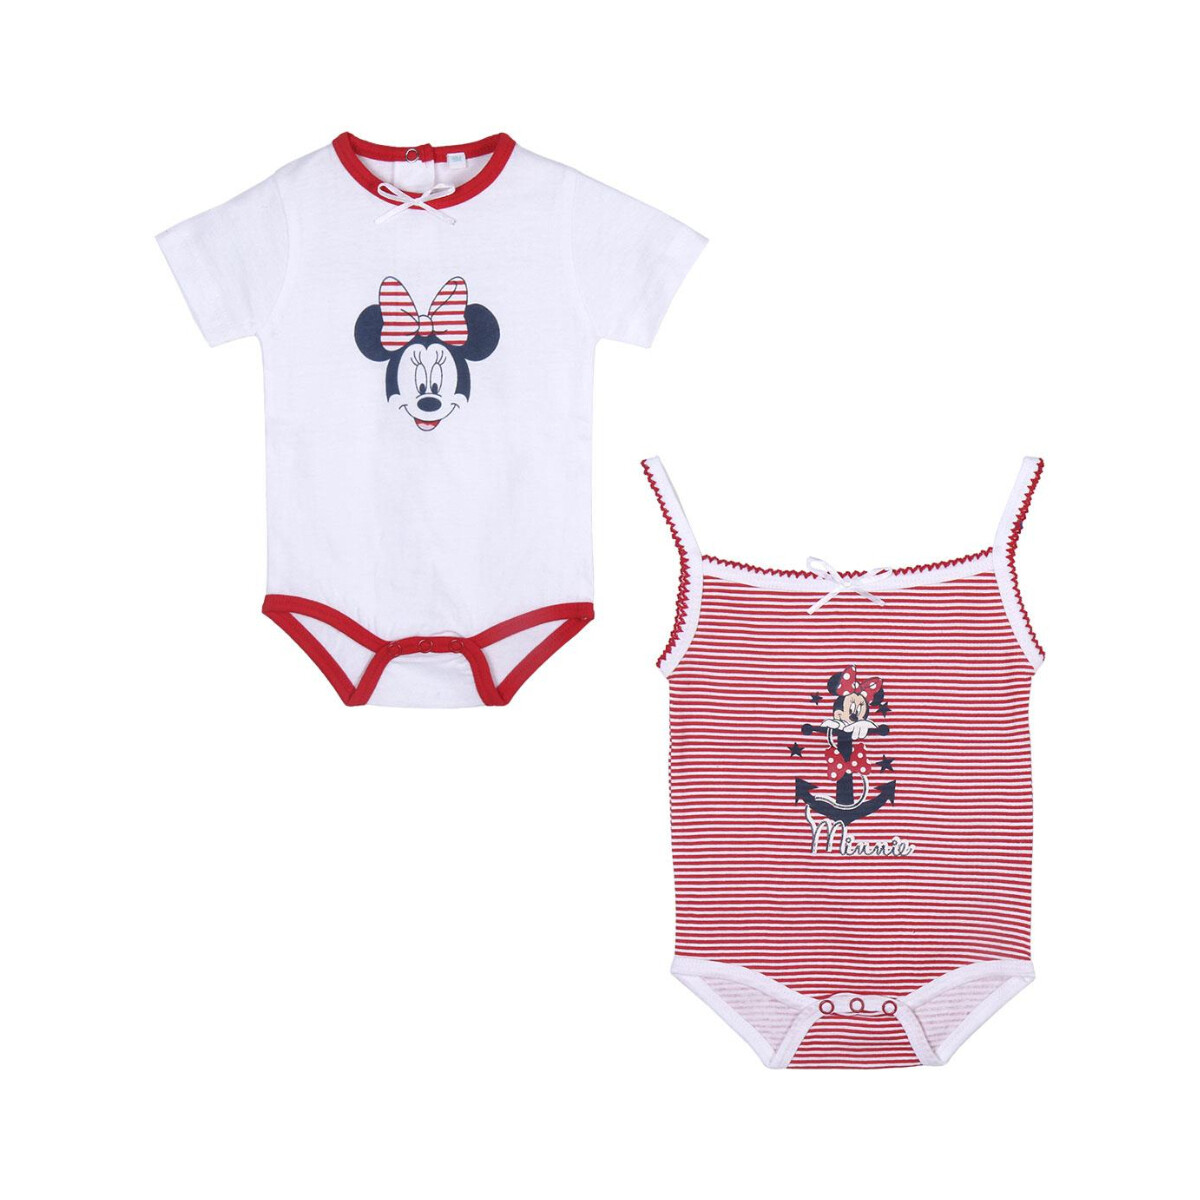 Textil Criança Pijamas / Camisas de dormir Disney 2200009301 Multicolor